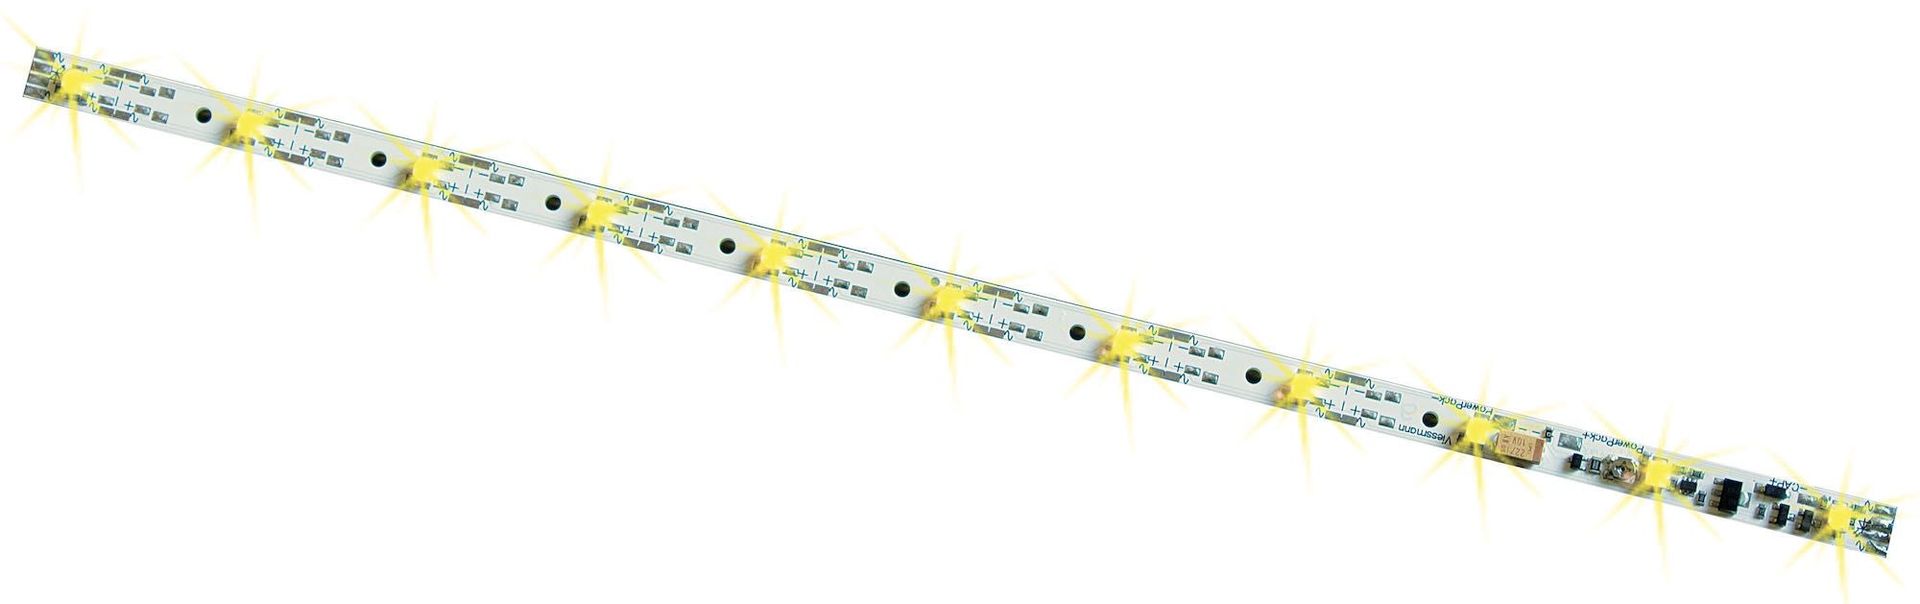 Viessmann 5076 - Waggon Innenbeleuchtung 11 LED´s gelb mit Funktionsdecoder H0 1:87